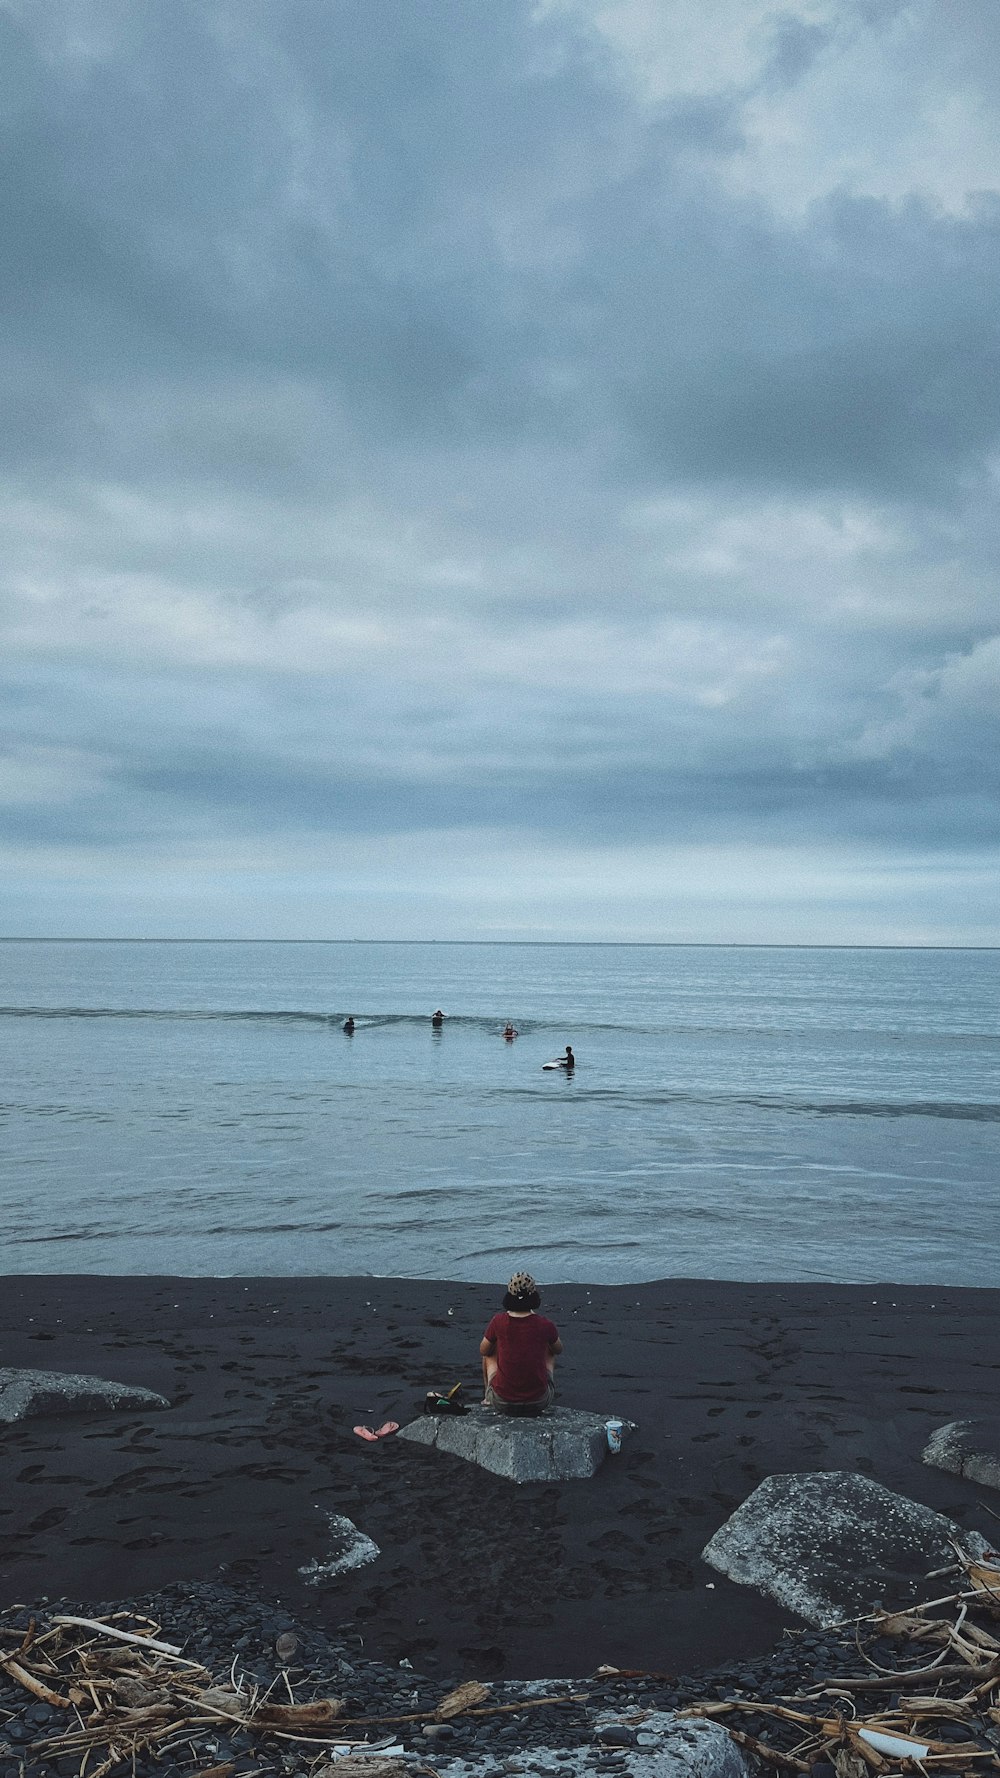 a person sitting on a beach near the ocean